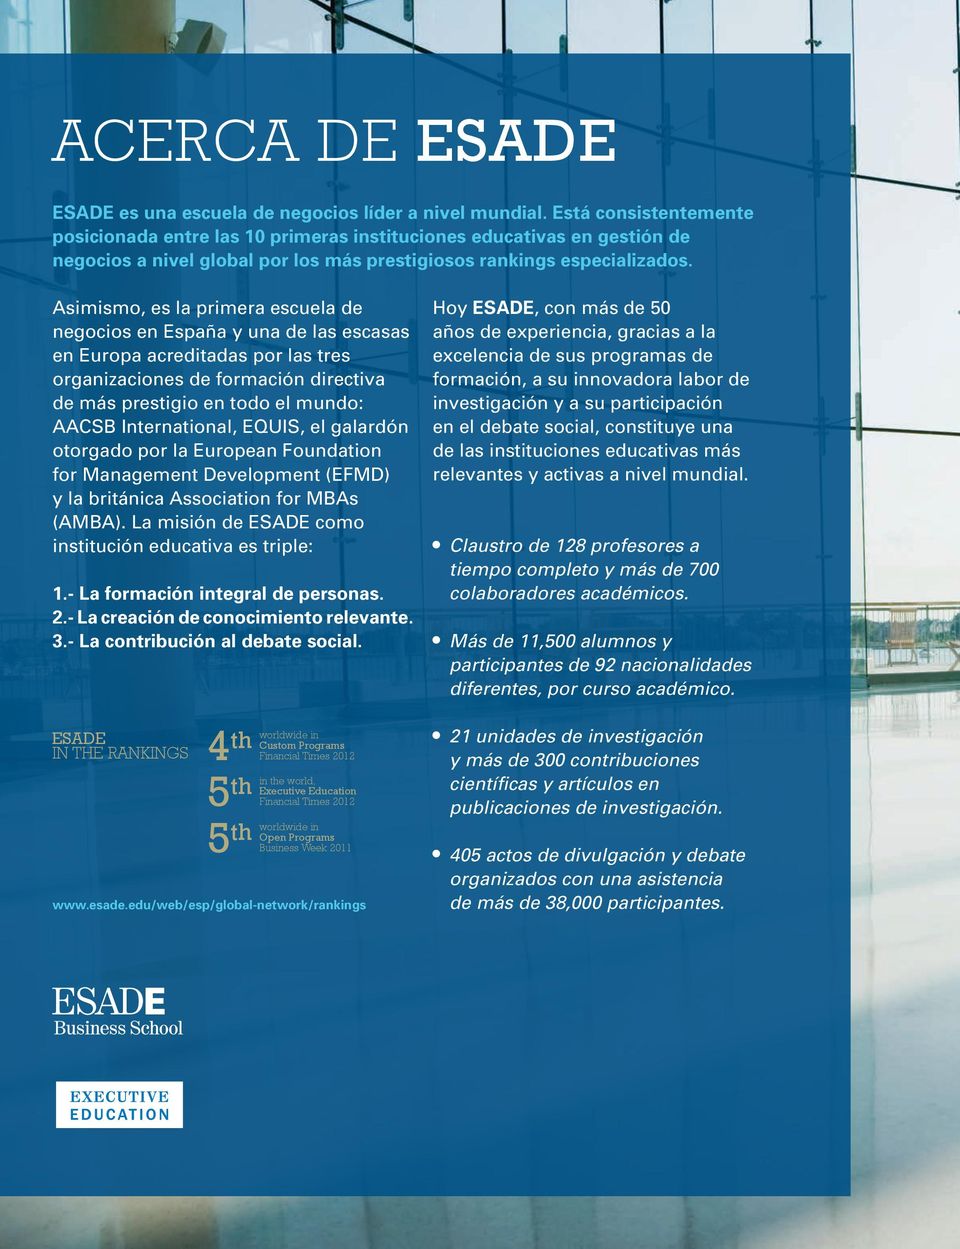 Asimismo, es la primera escuela de negocios en España y una de las escasas en Europa acreditadas por las tres organizaciones de formación directiva de más prestigio en todo el mundo: AACSB